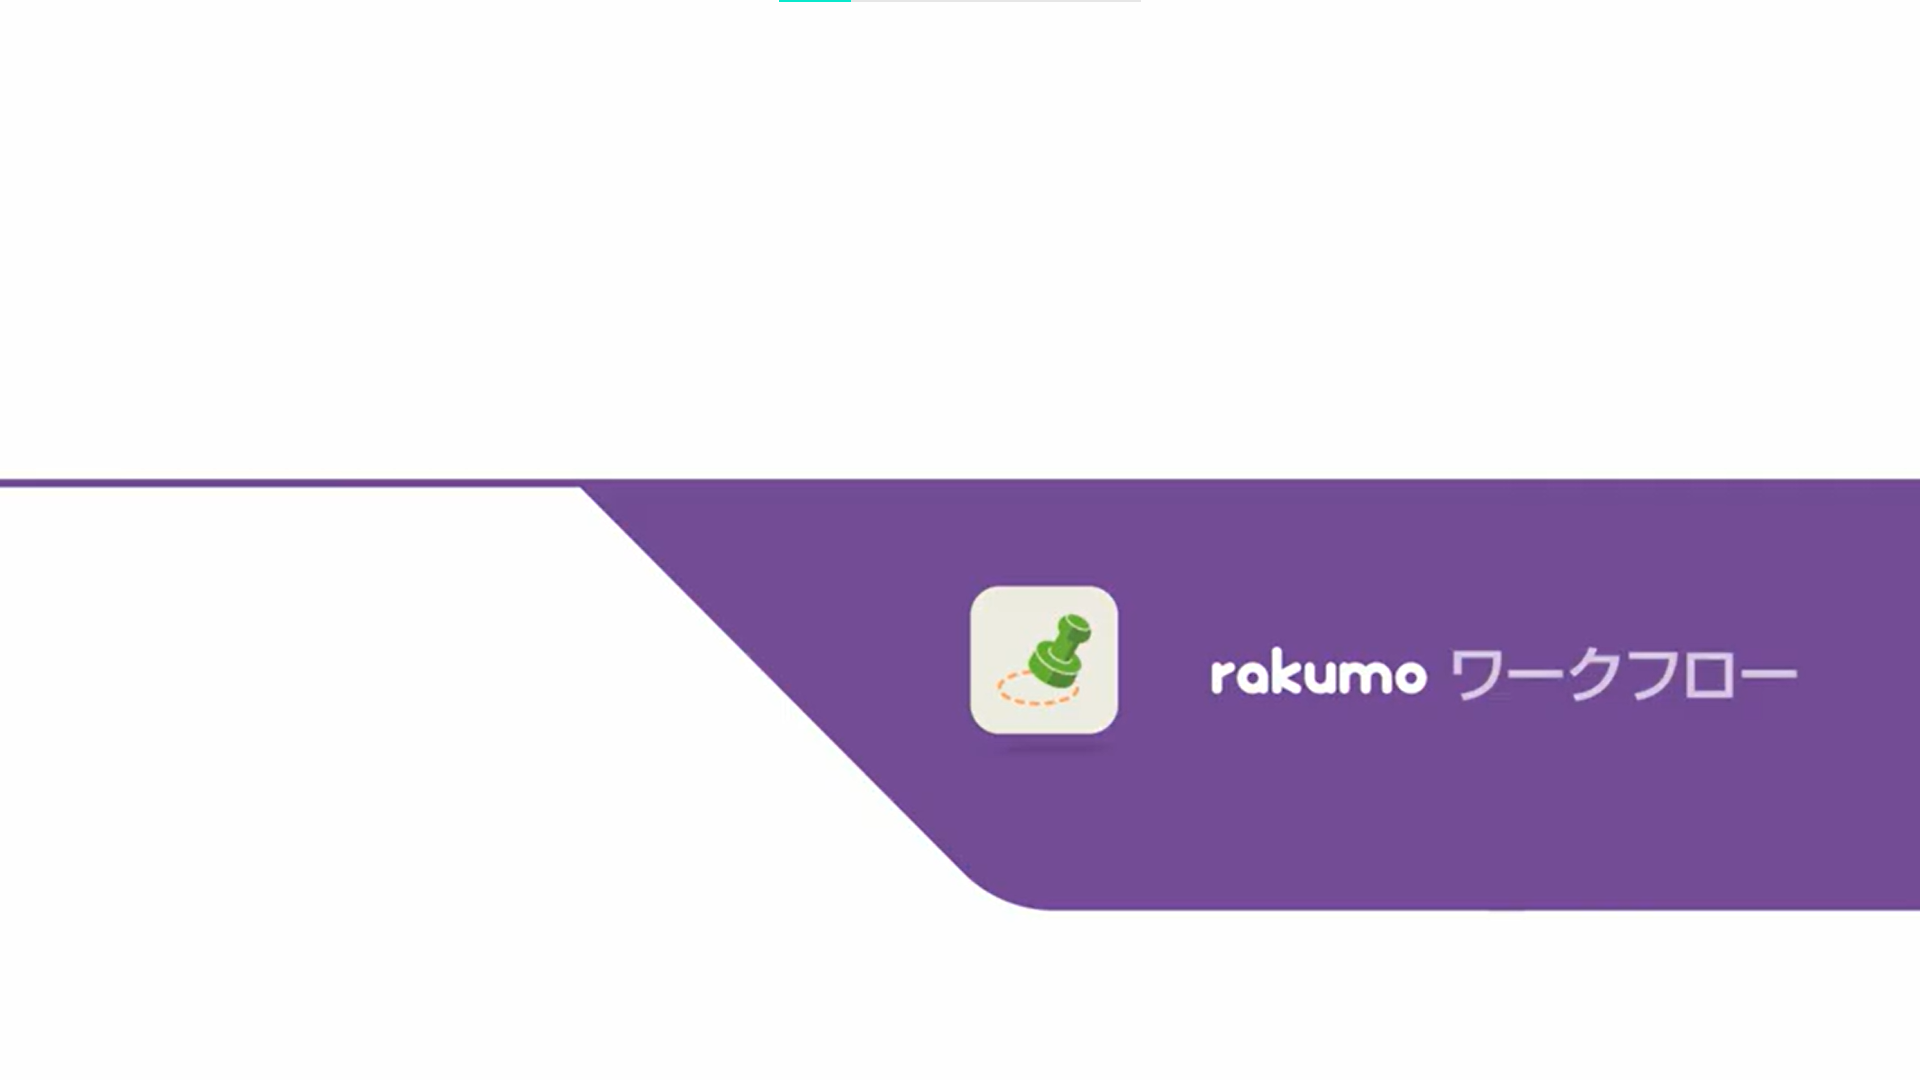 クラウド型拡張ツール「rakumo」サービス紹介動画